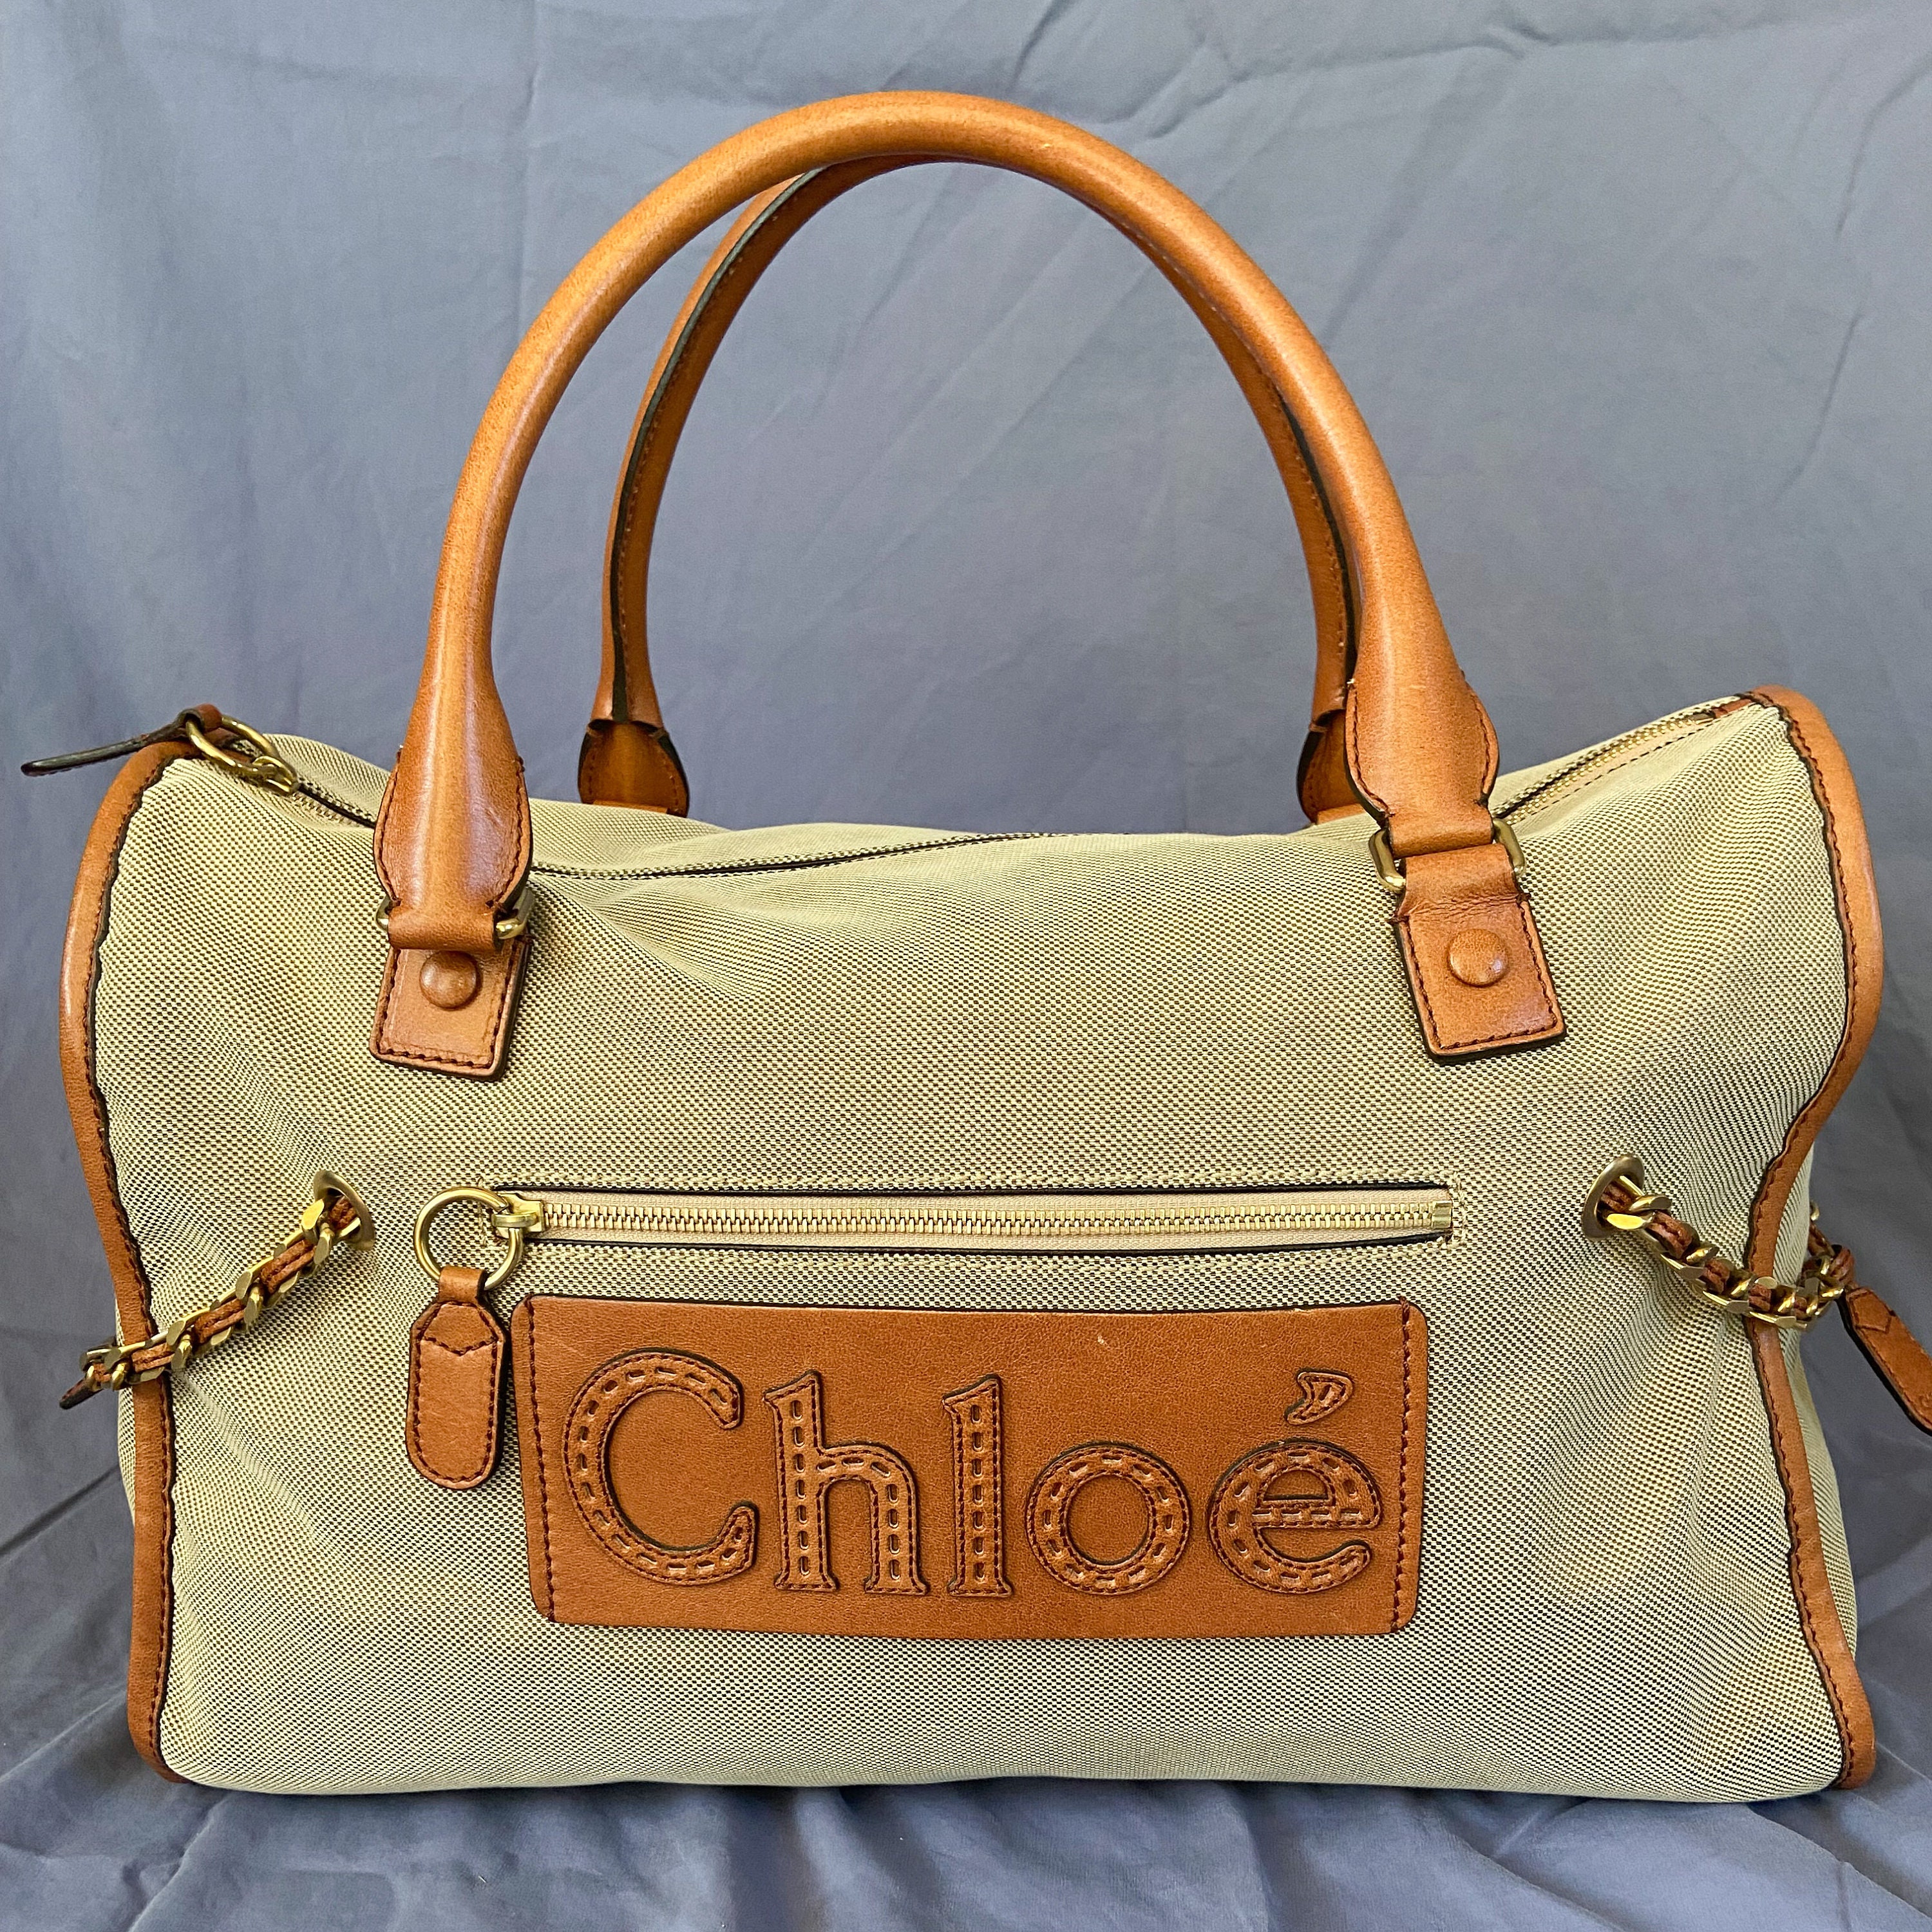 CHLOE Handbag Knockoffs Under $100 - Citizens of Beauty